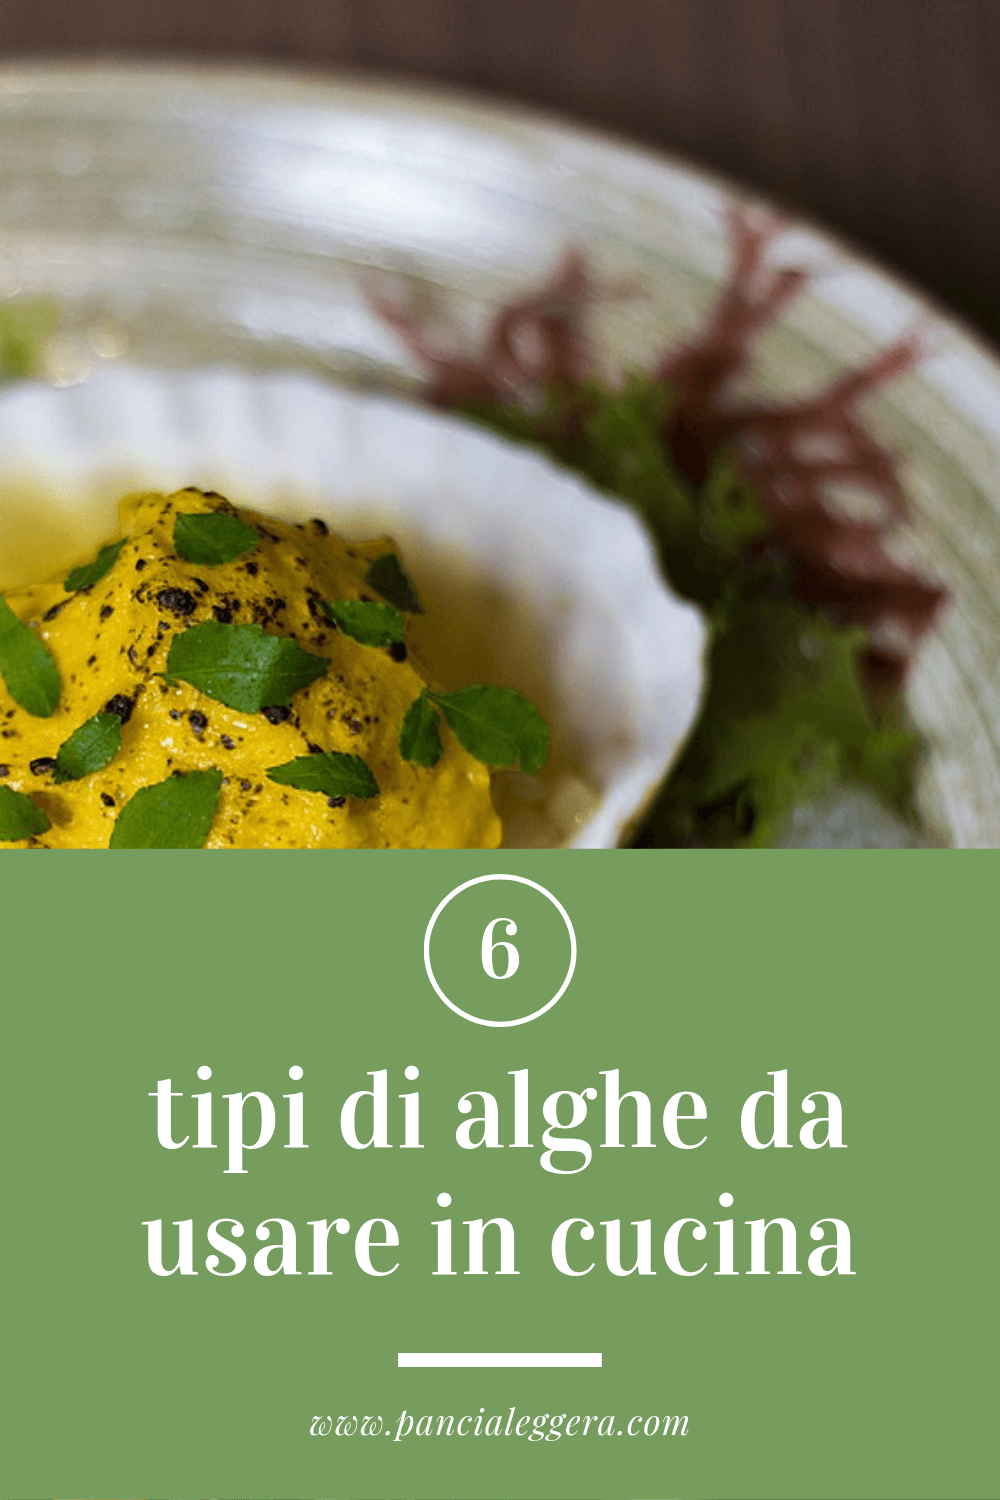 6 tipi di alghe da usare in cucina